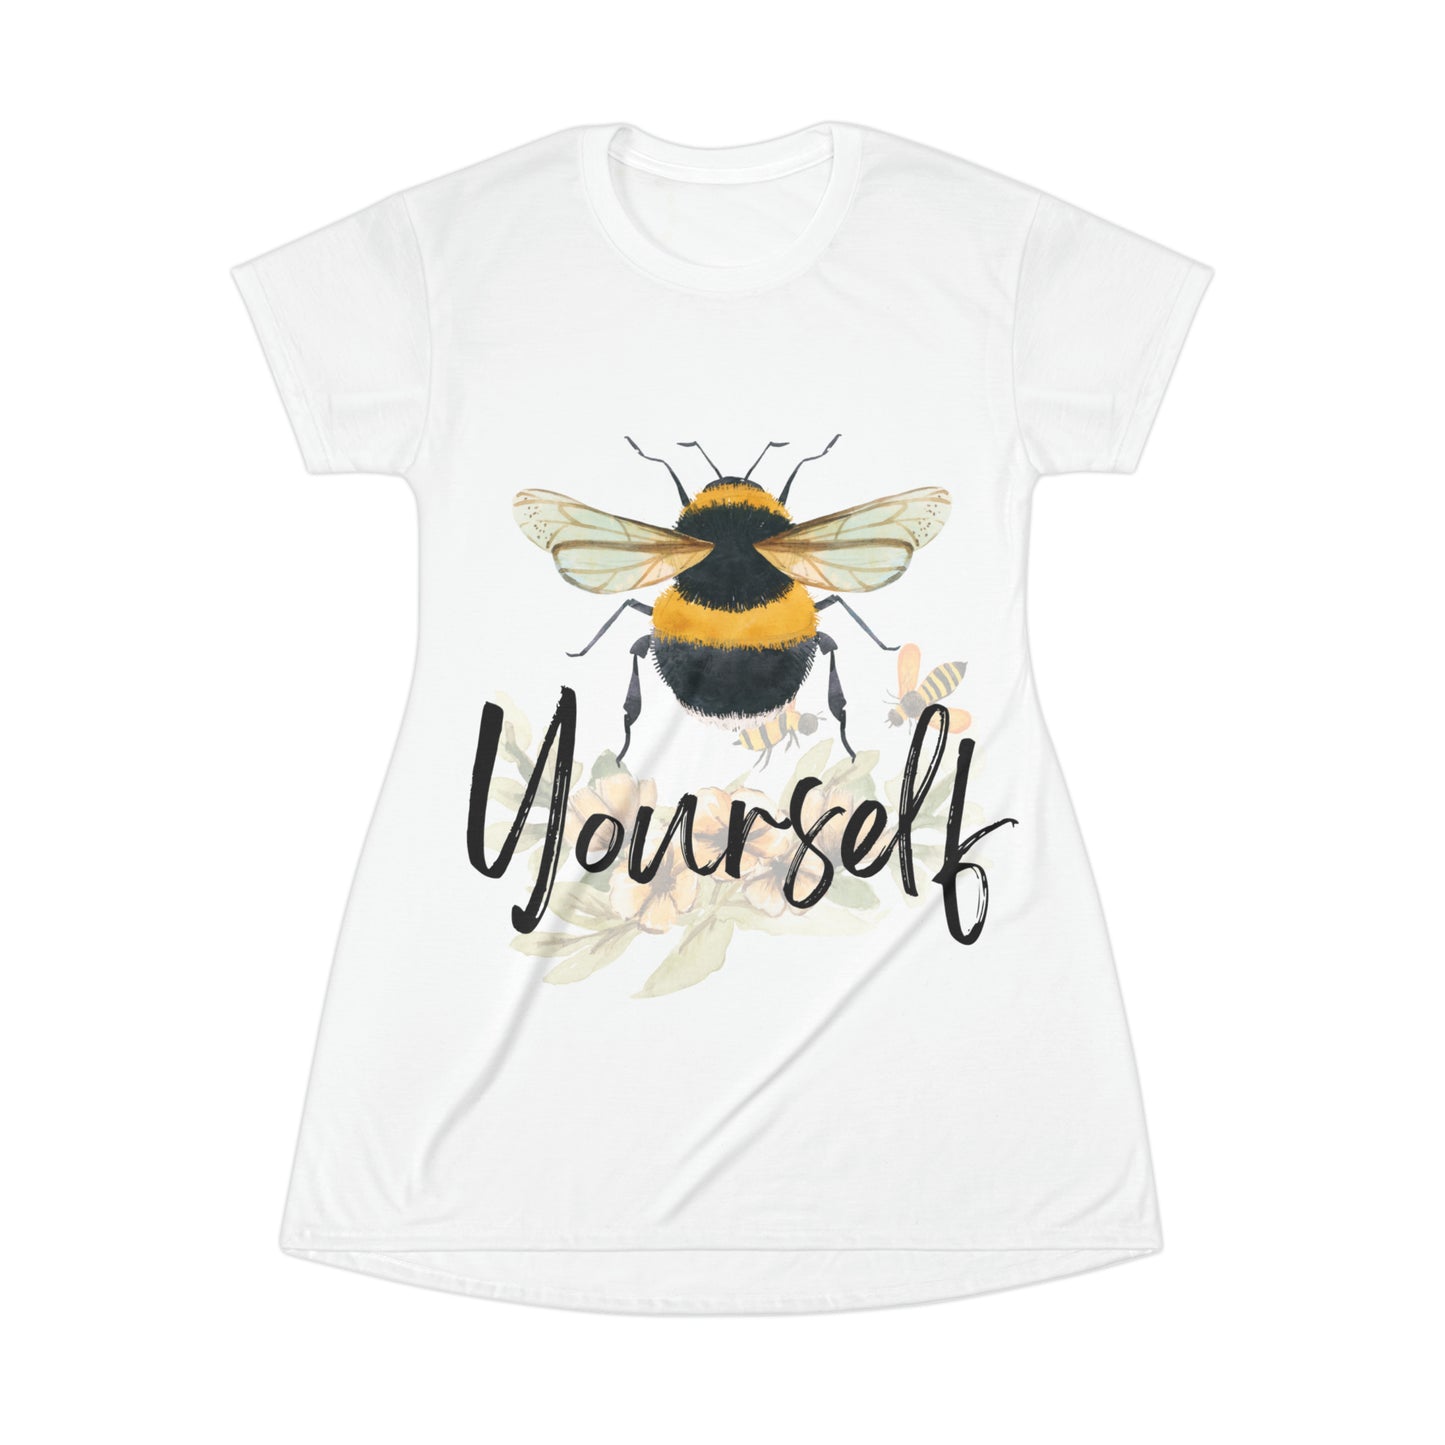 Bee Yourself Sleep Shirt